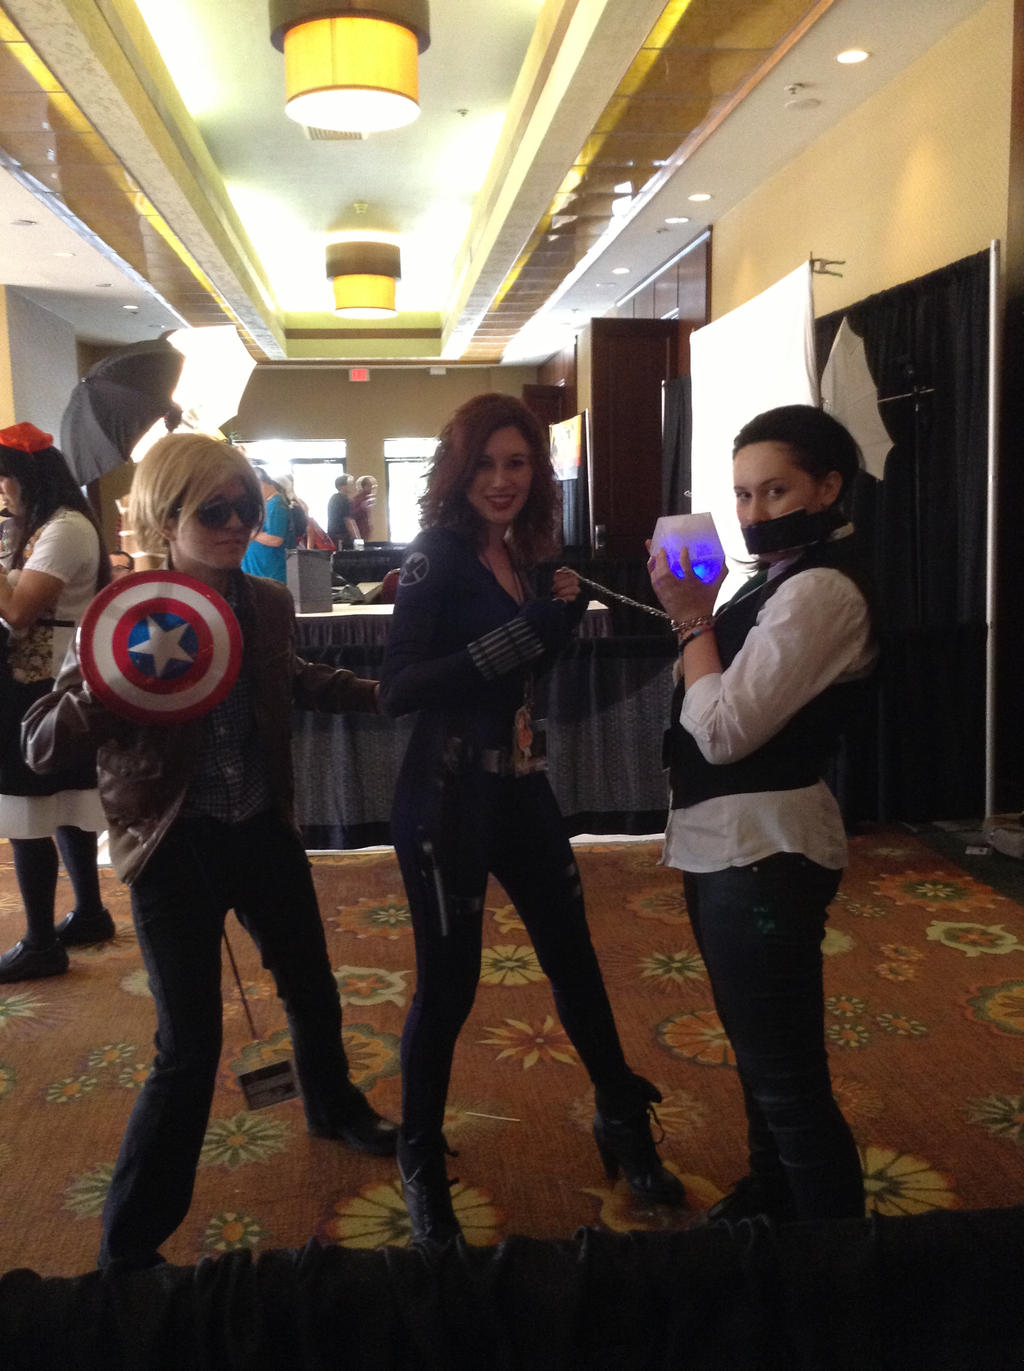 Steve, Natasha, and Loki